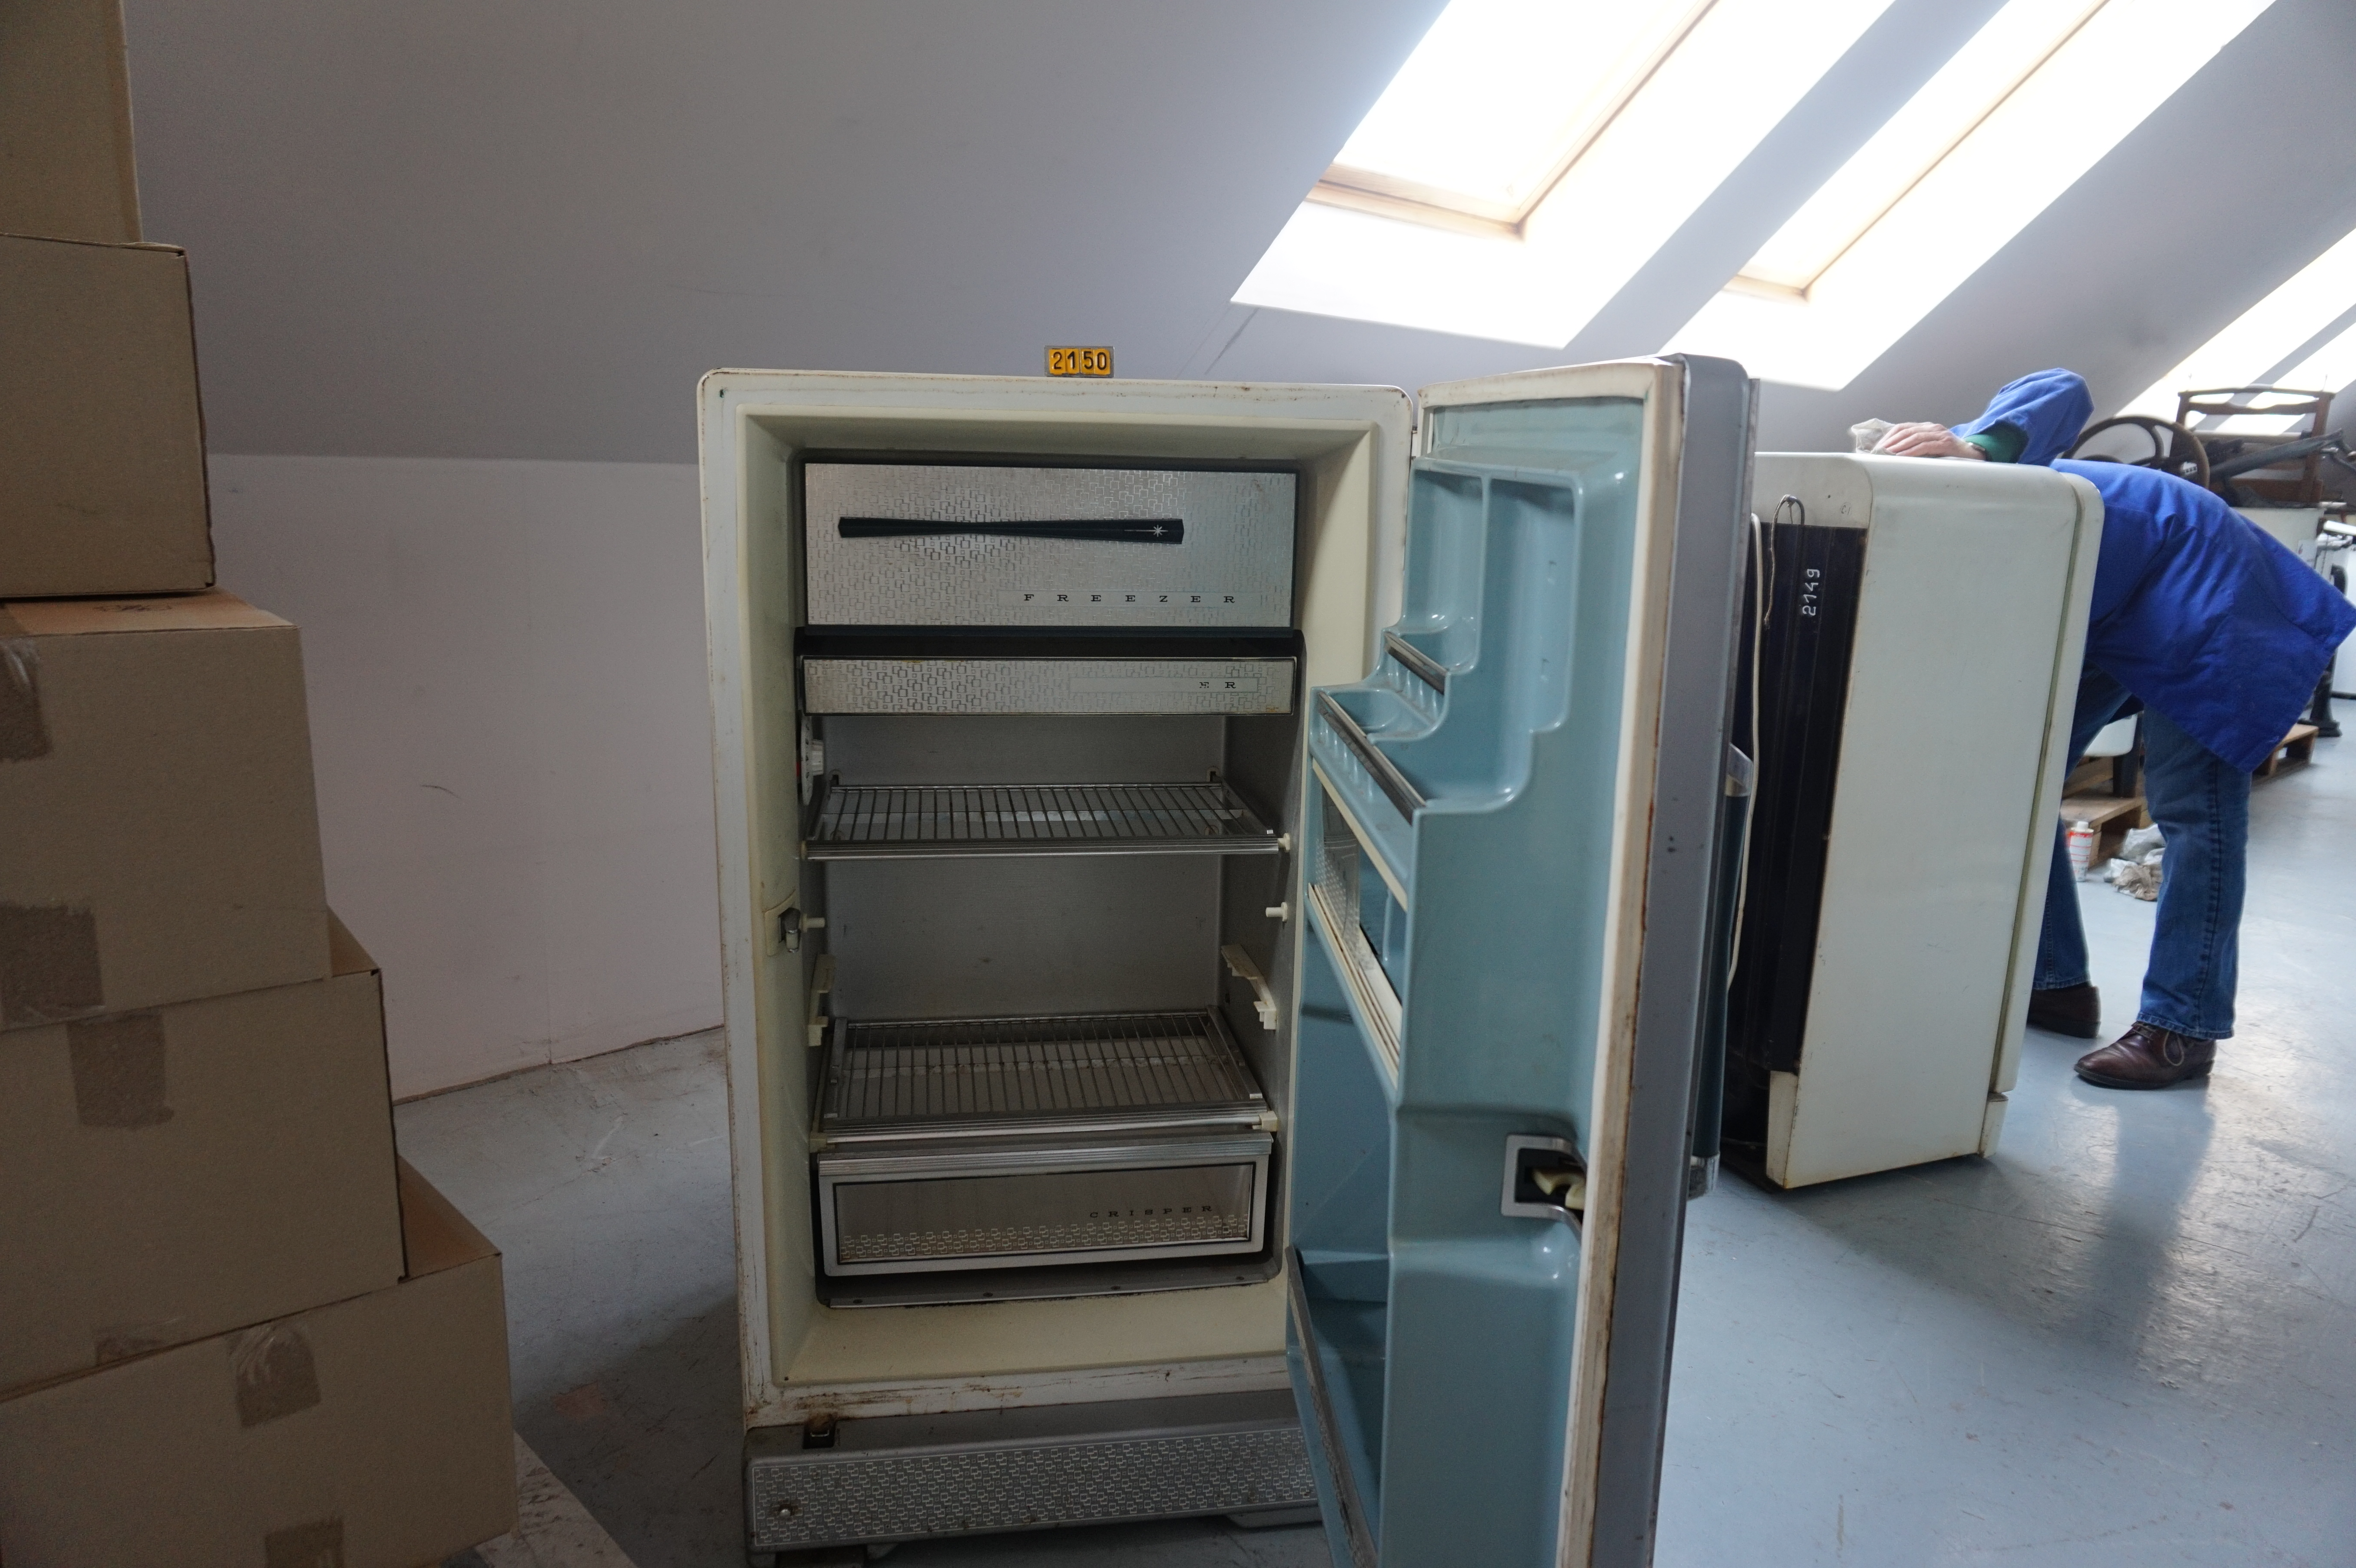  Collection ASPEG, pièce numéro 2150 : refrigerateur à ouveture pedale